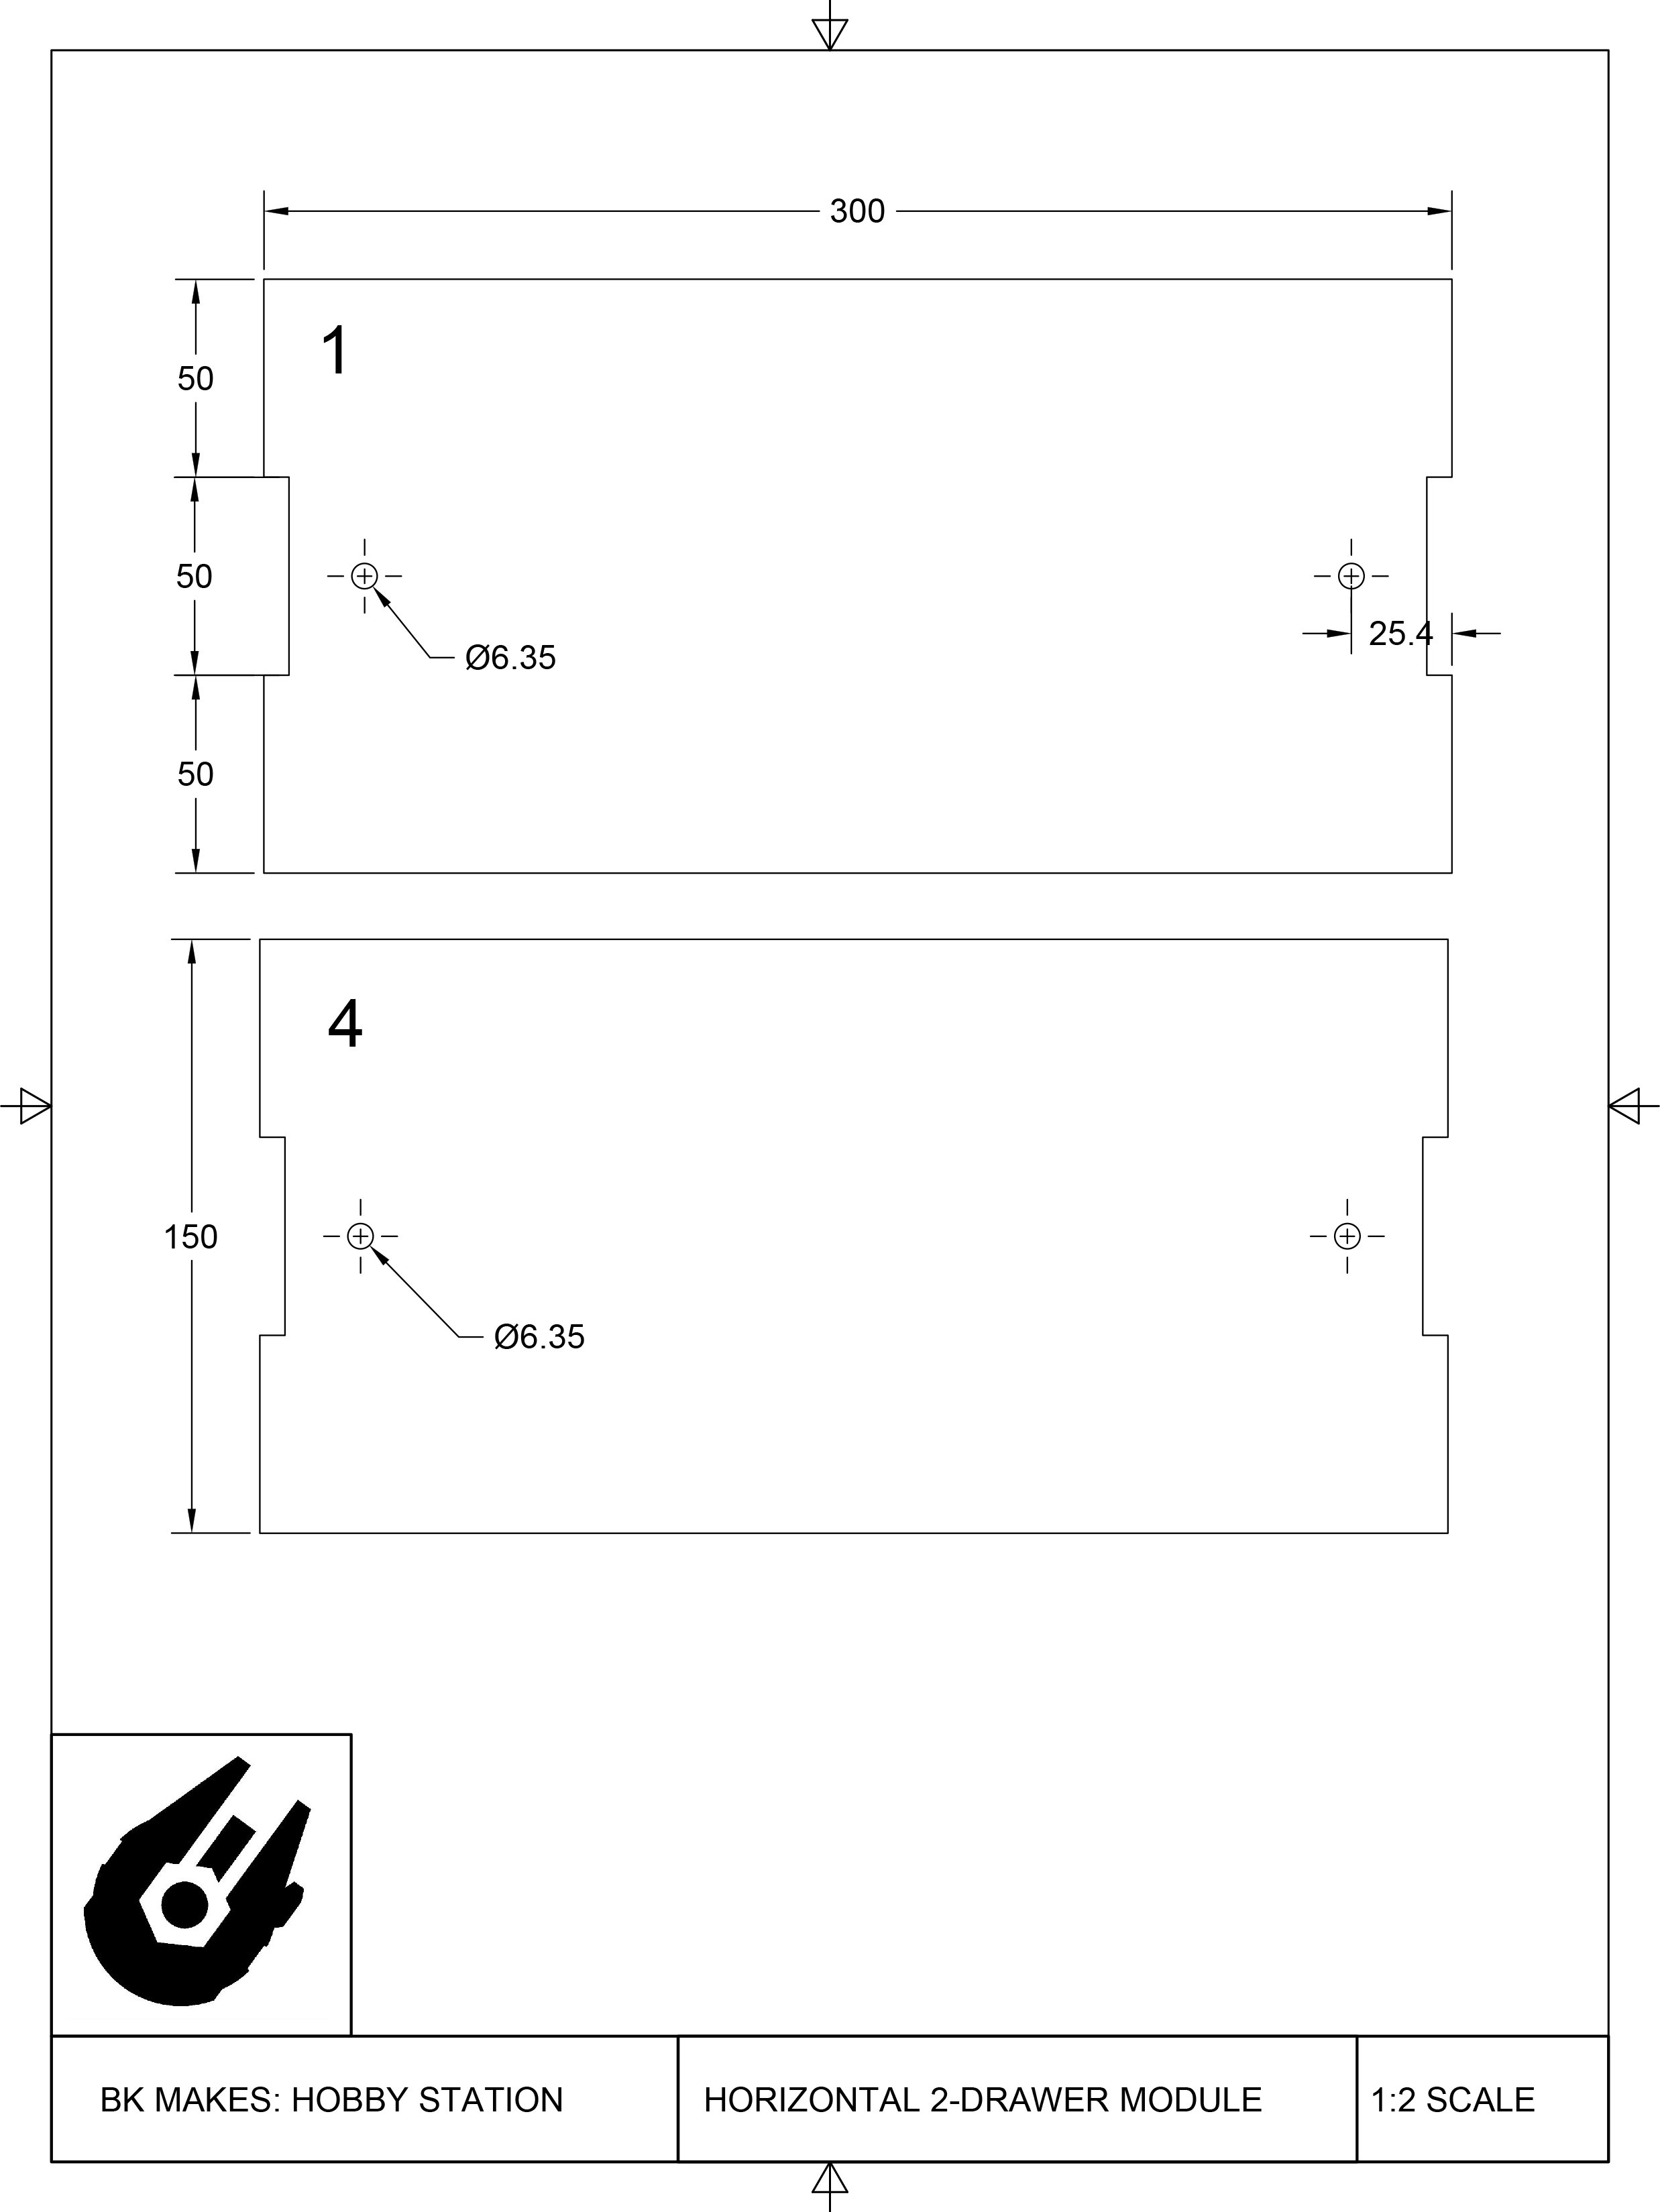 Horizontal 2-Drawer Module Templates-1.jpg